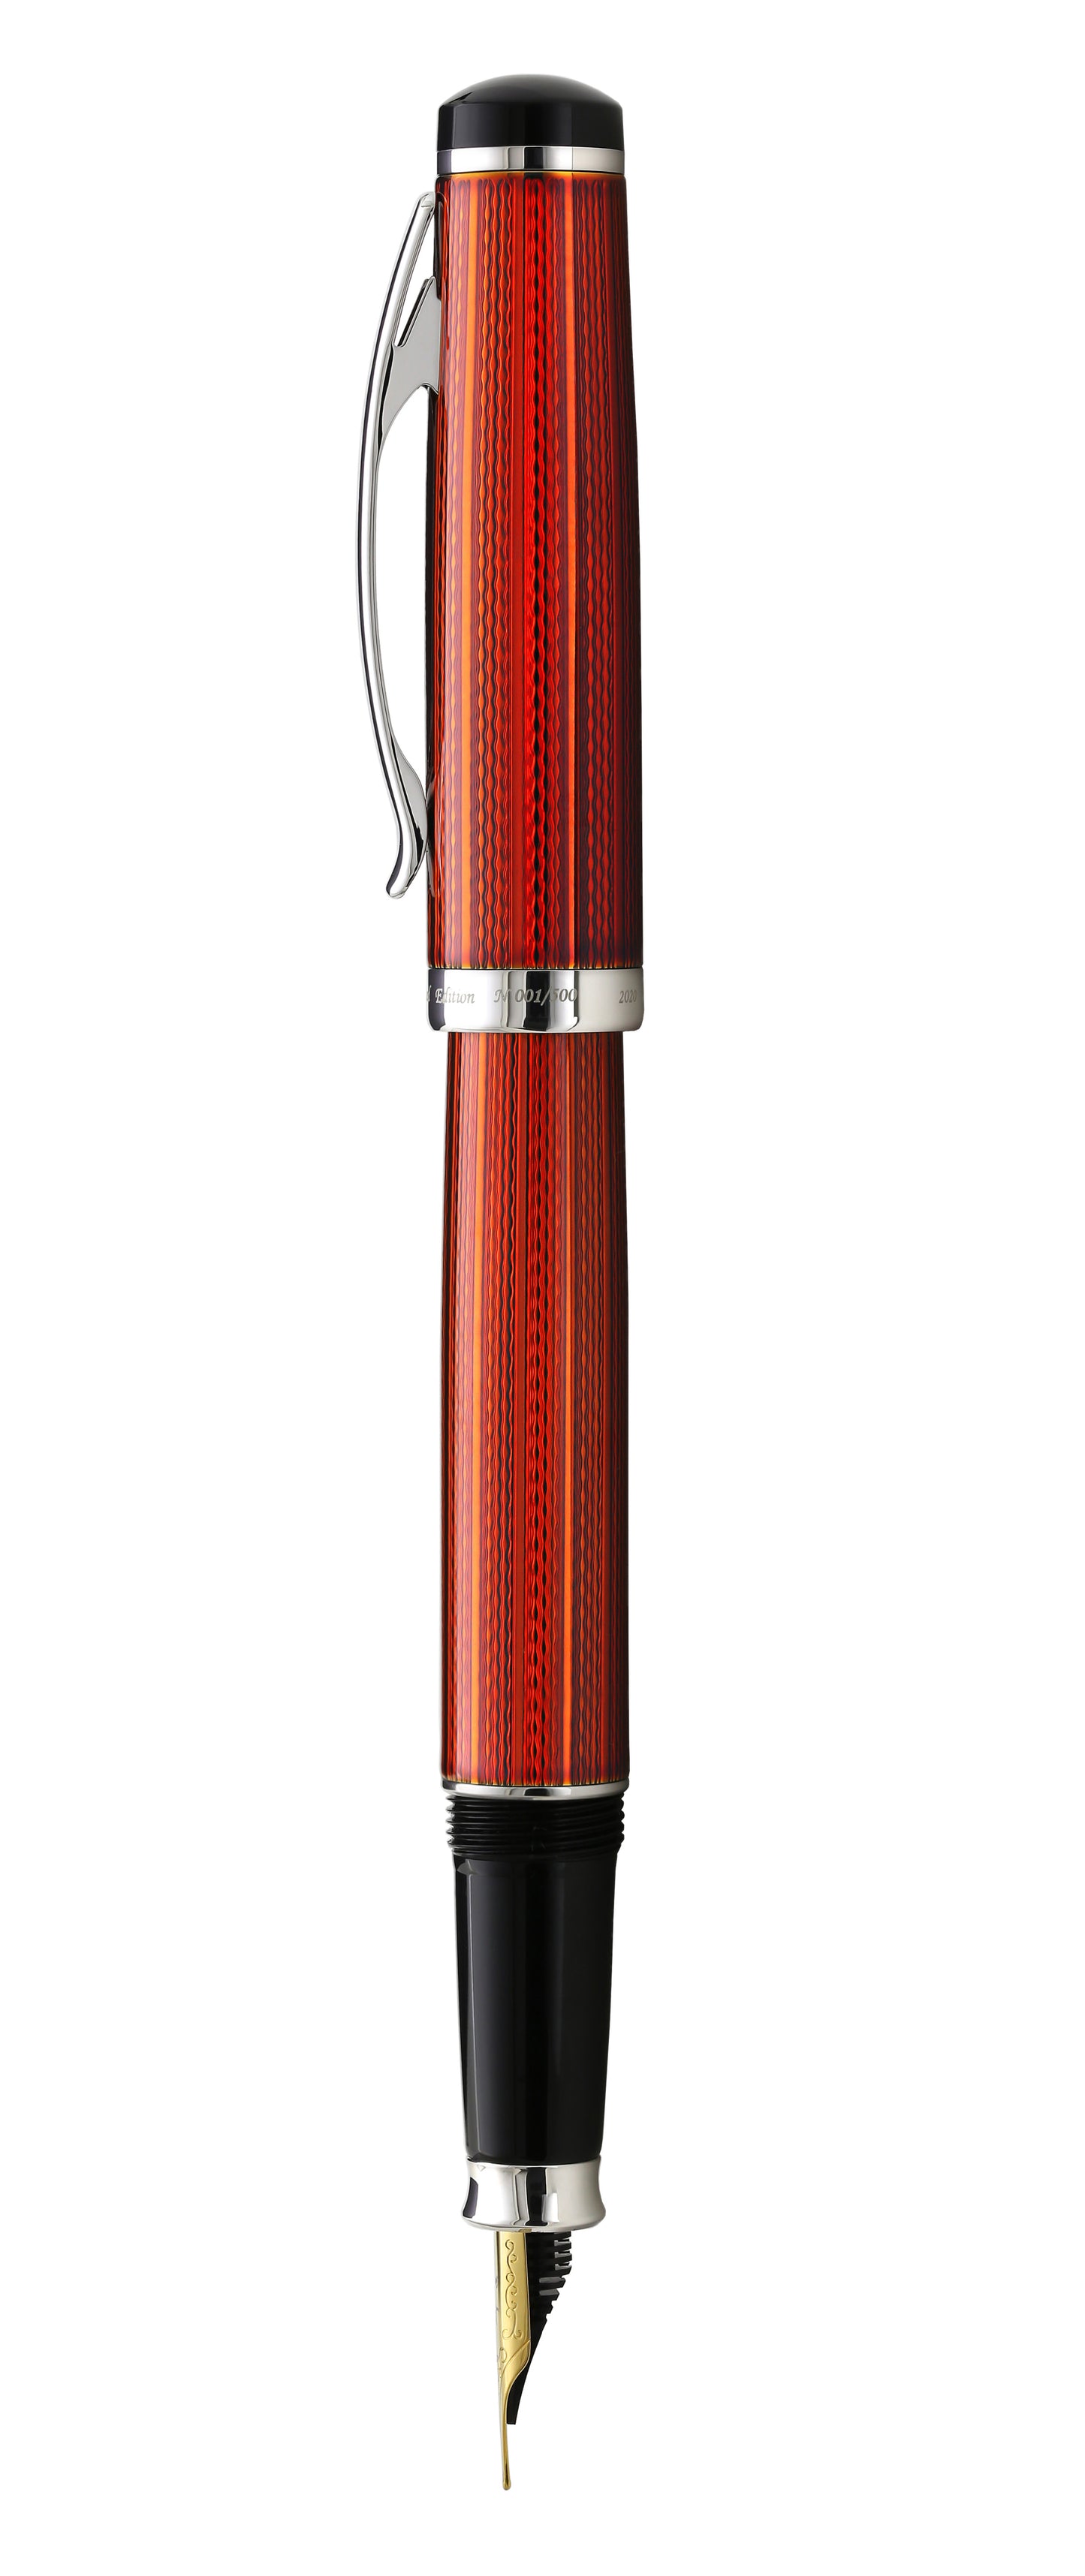 Xezo - Side view of the Incognito Sunstone FM fountain pen